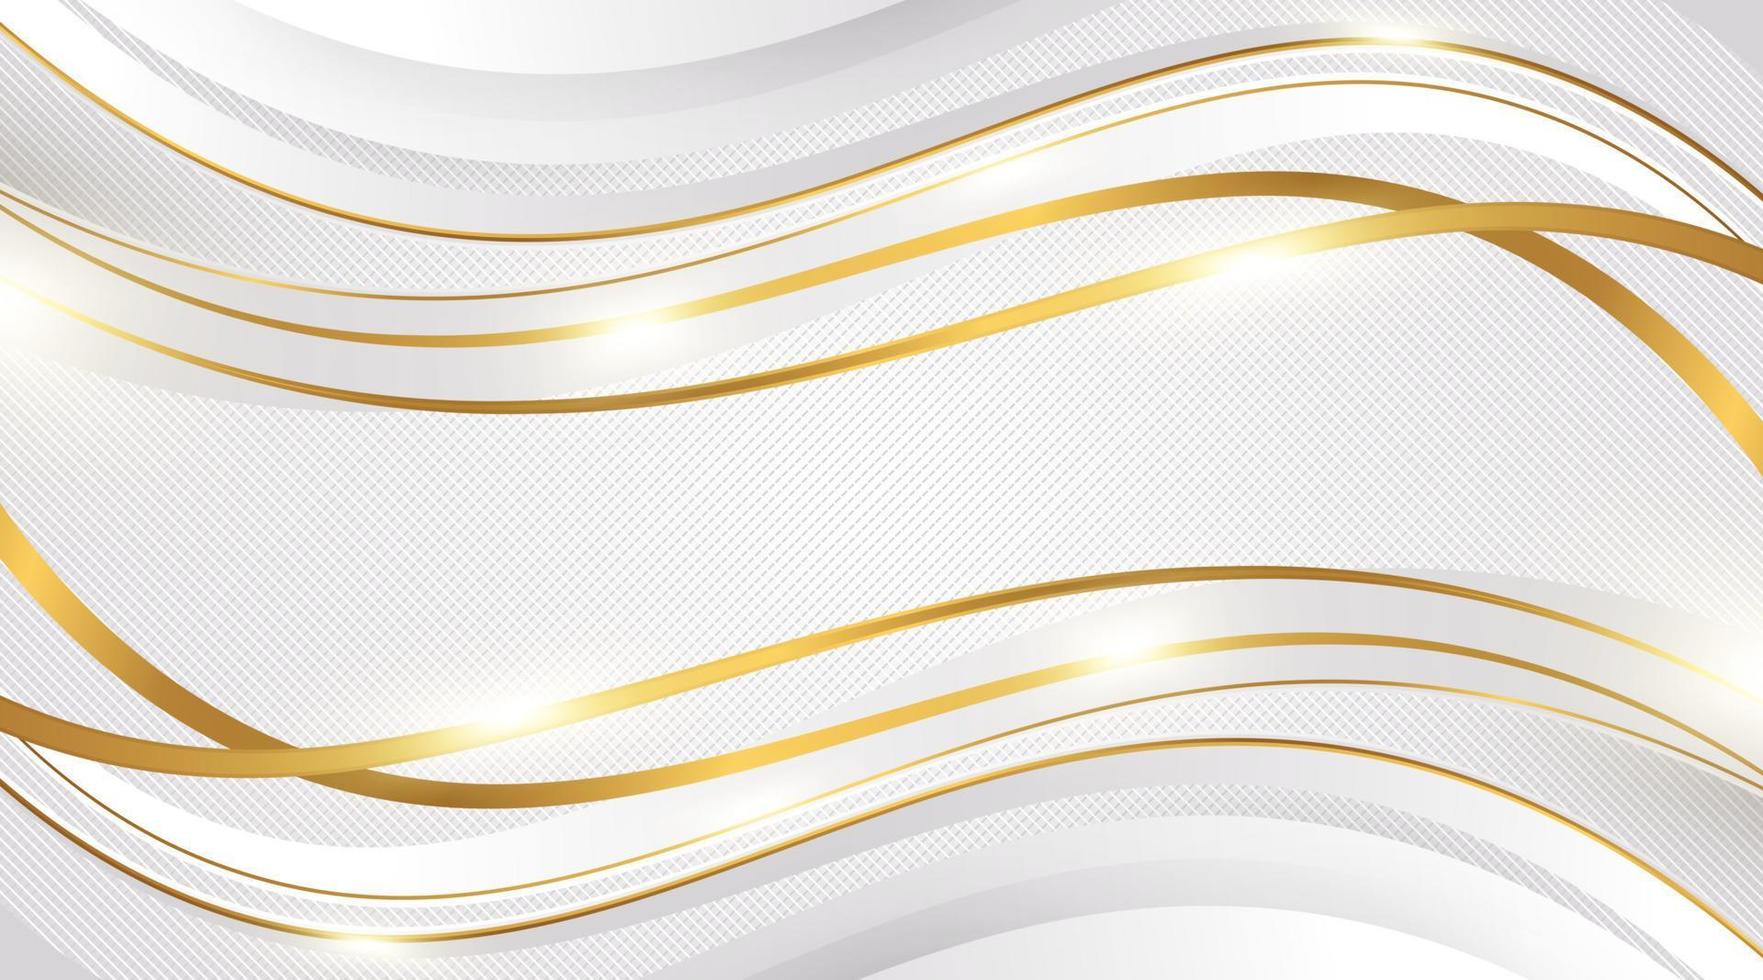 lyxig vit och guld bakgrund med gyllene linjer och papperssnitt stil. premium grå och guld bakgrund för pris, nominering, ceremoni, formell inbjudan eller certifikatdesign vektor